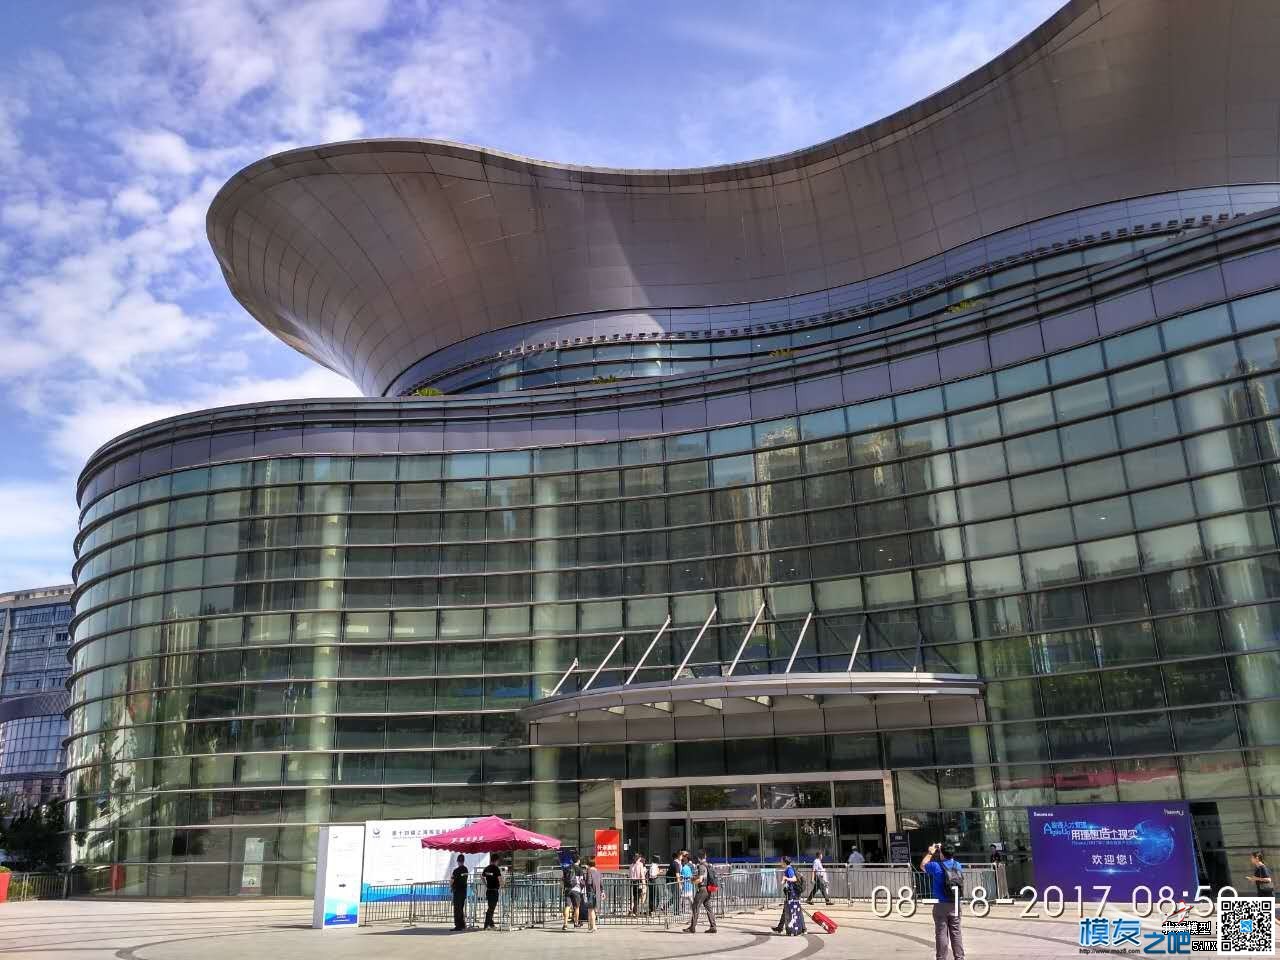 十四届上海模型展览会 - 乐迪电子直播记 无人机,穿越机,船模,模型,多旋翼 作者:乐迪support 8091 